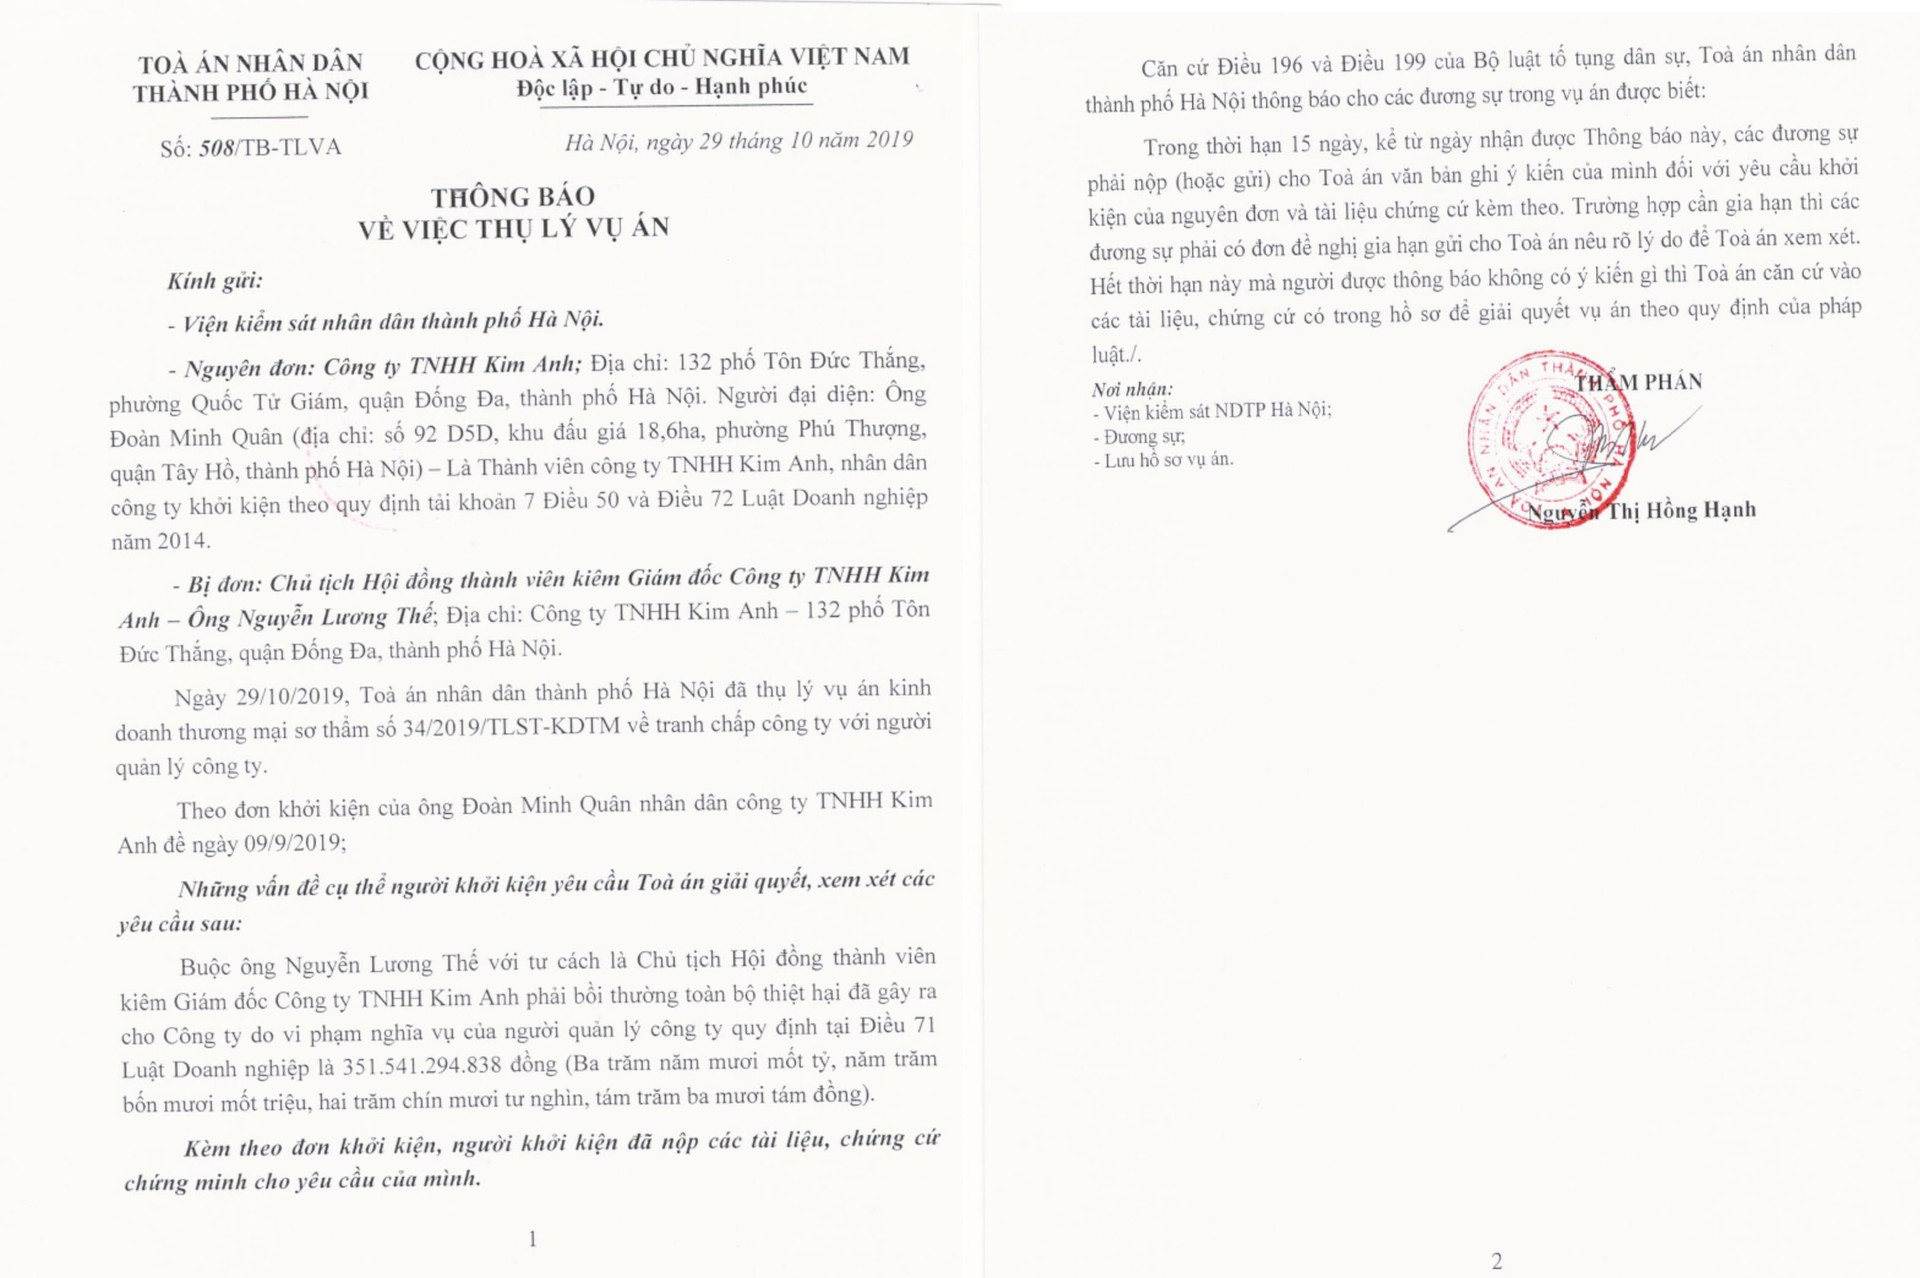 Vụ việc tranh chấp tại Công ty Kim Anh: Sở Tài nguyên và Môi trường Hà Nội bị kiện